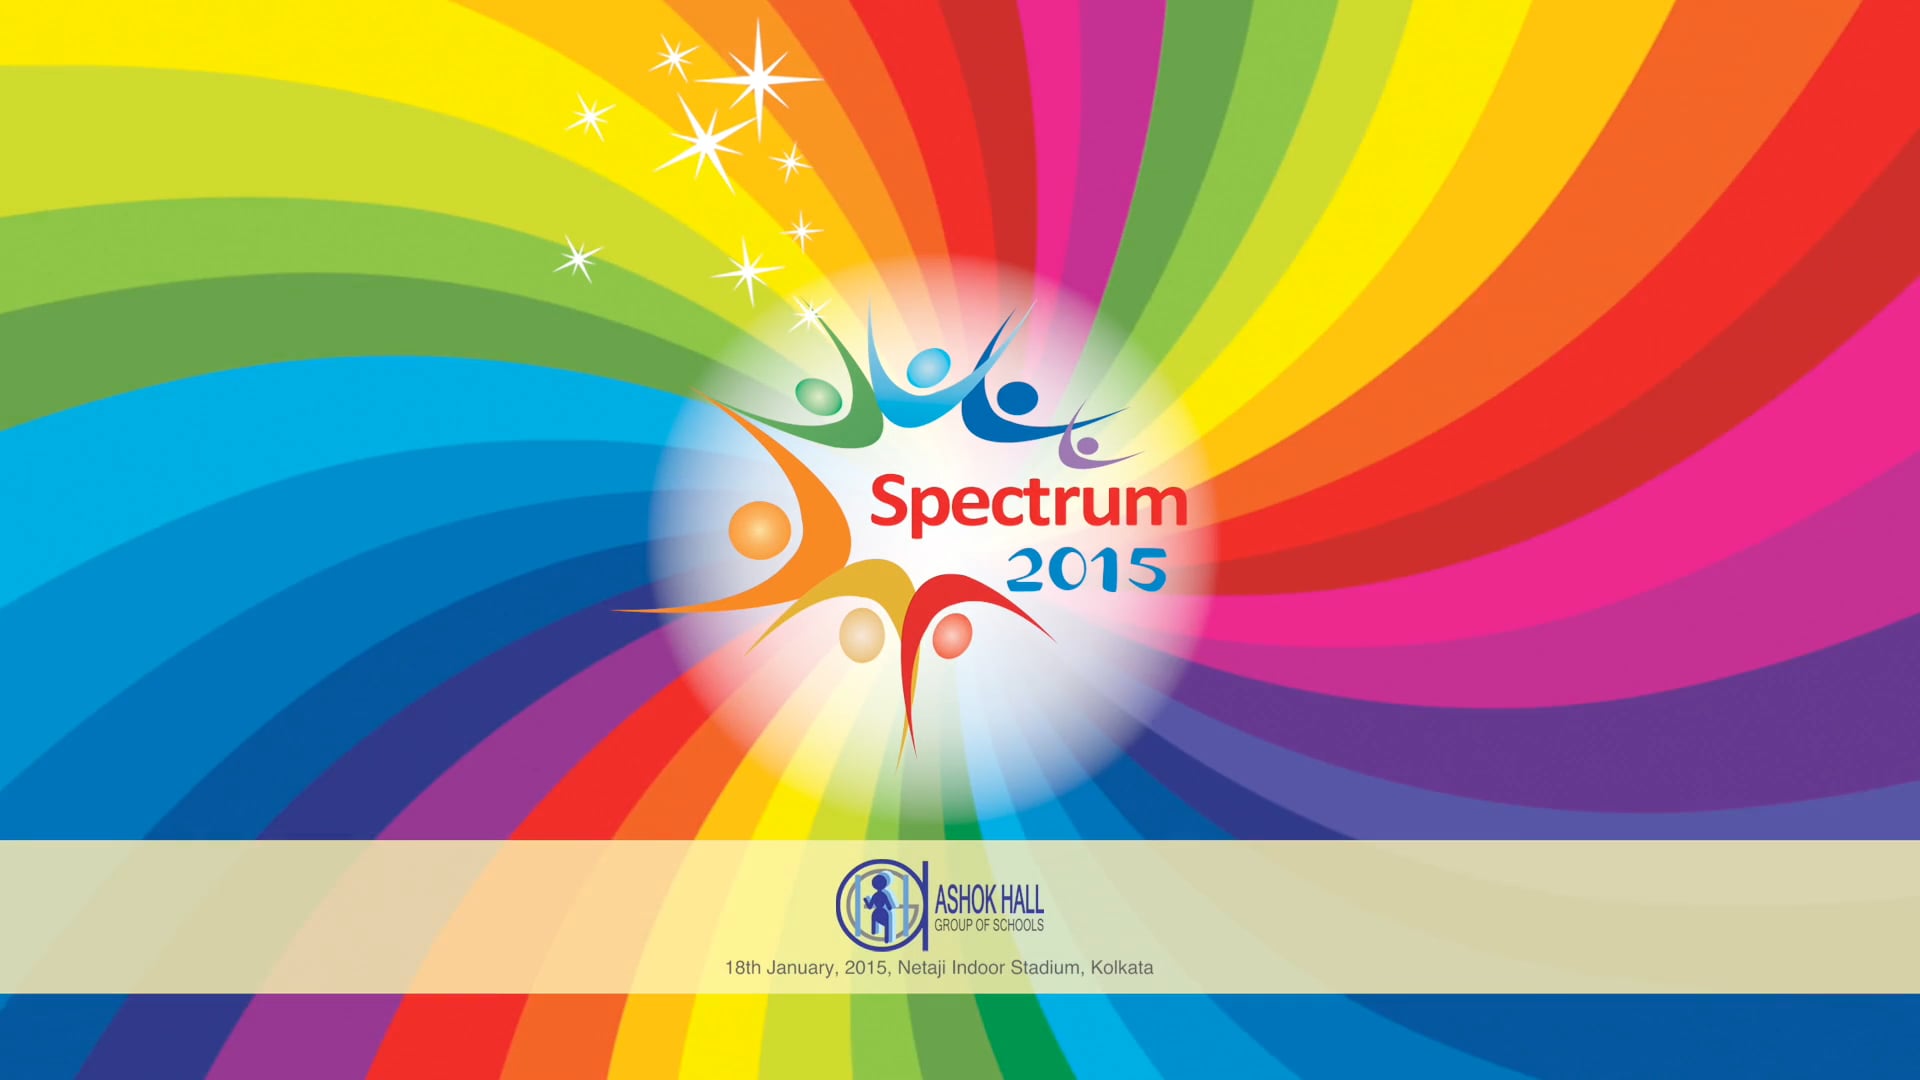 #Spectrum 2015